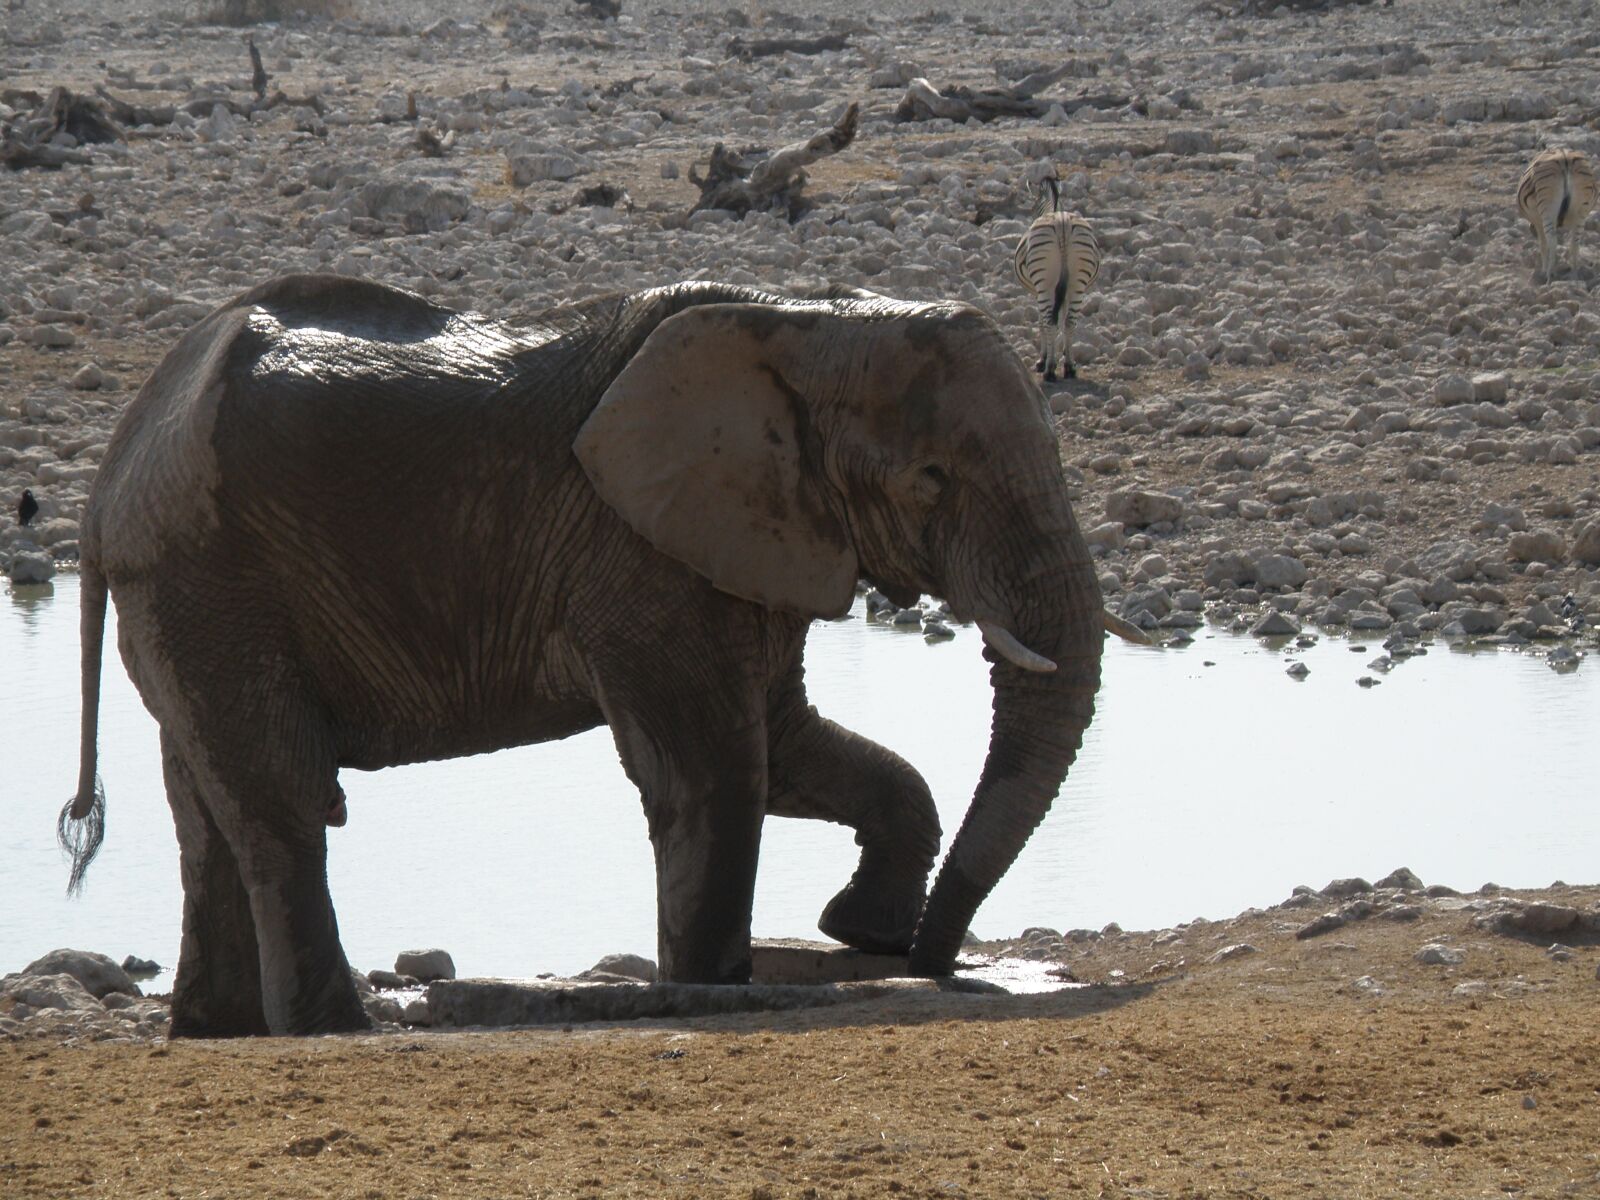 Olympus SP570UZ sample photo. Elephants, namibia, park photography